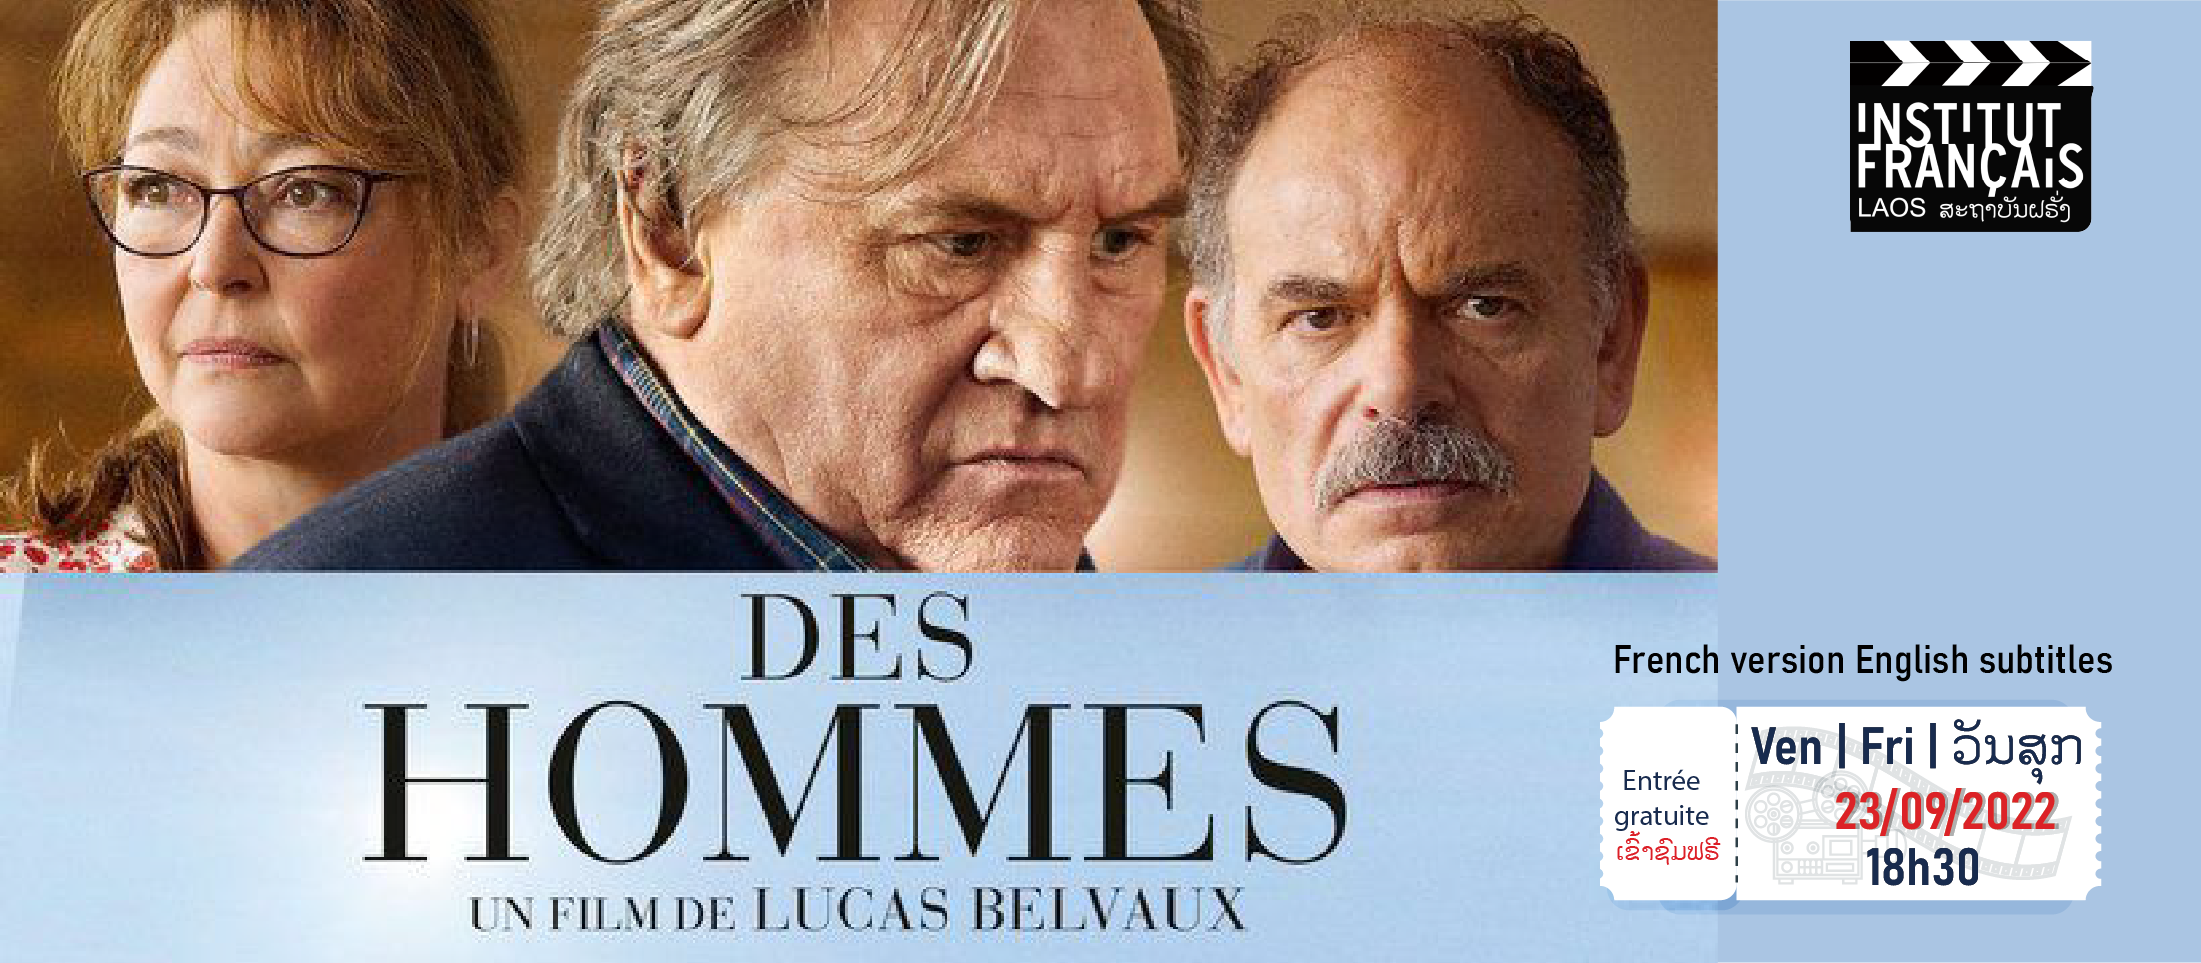 Cinema "Des Hommes"